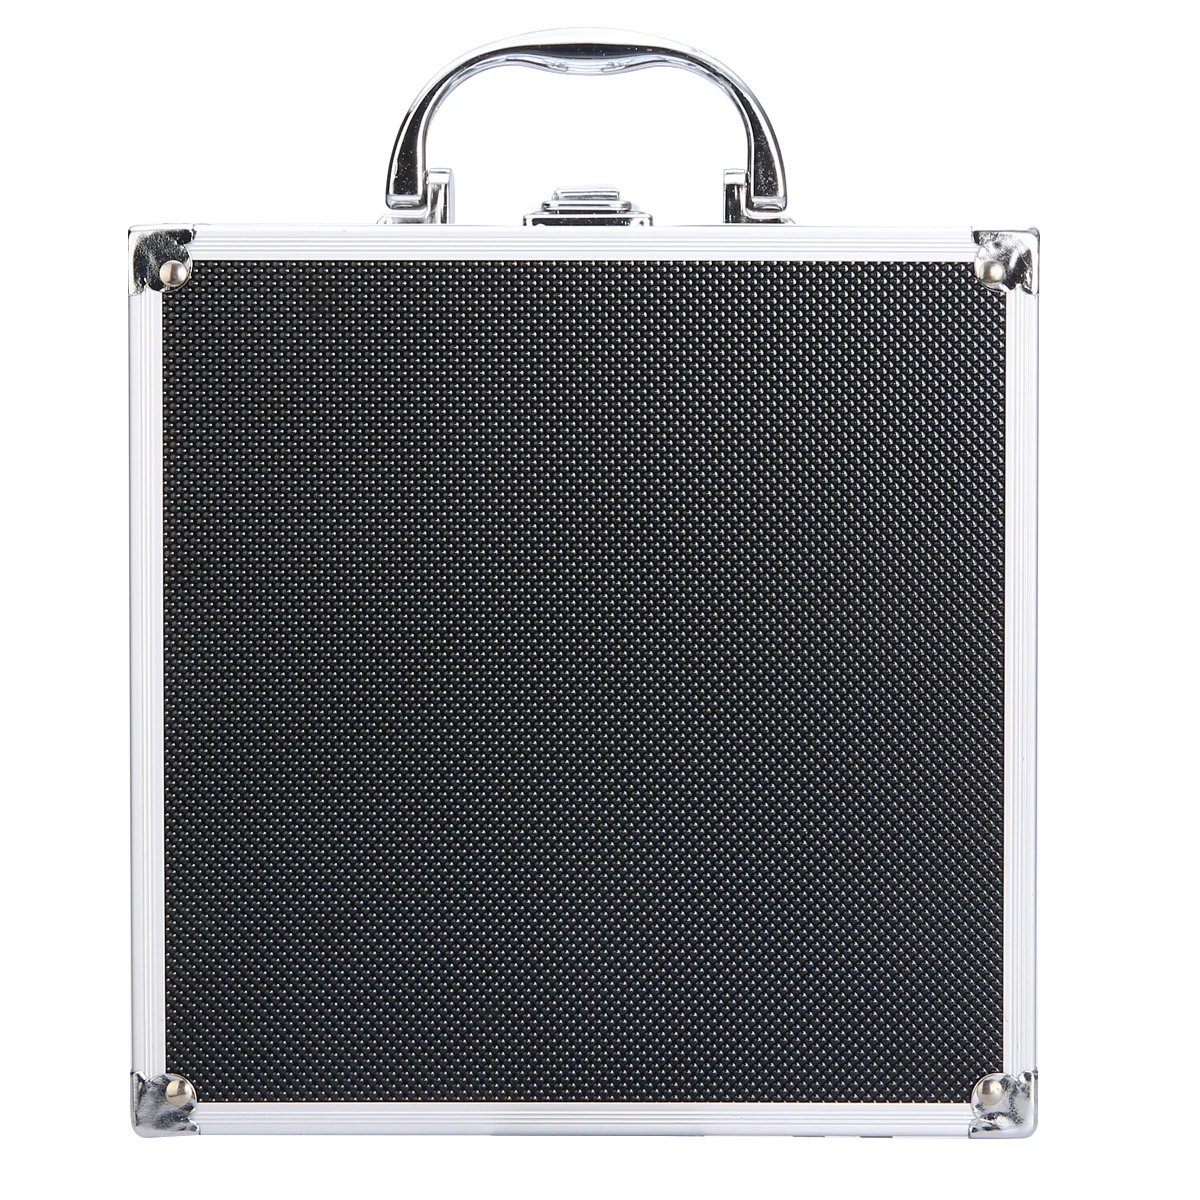 1 шт. ящик для инструментов алюминиевый сплав домашний ящик для хранения портативный чемодан для хранения путешествия чемодан Органайзер